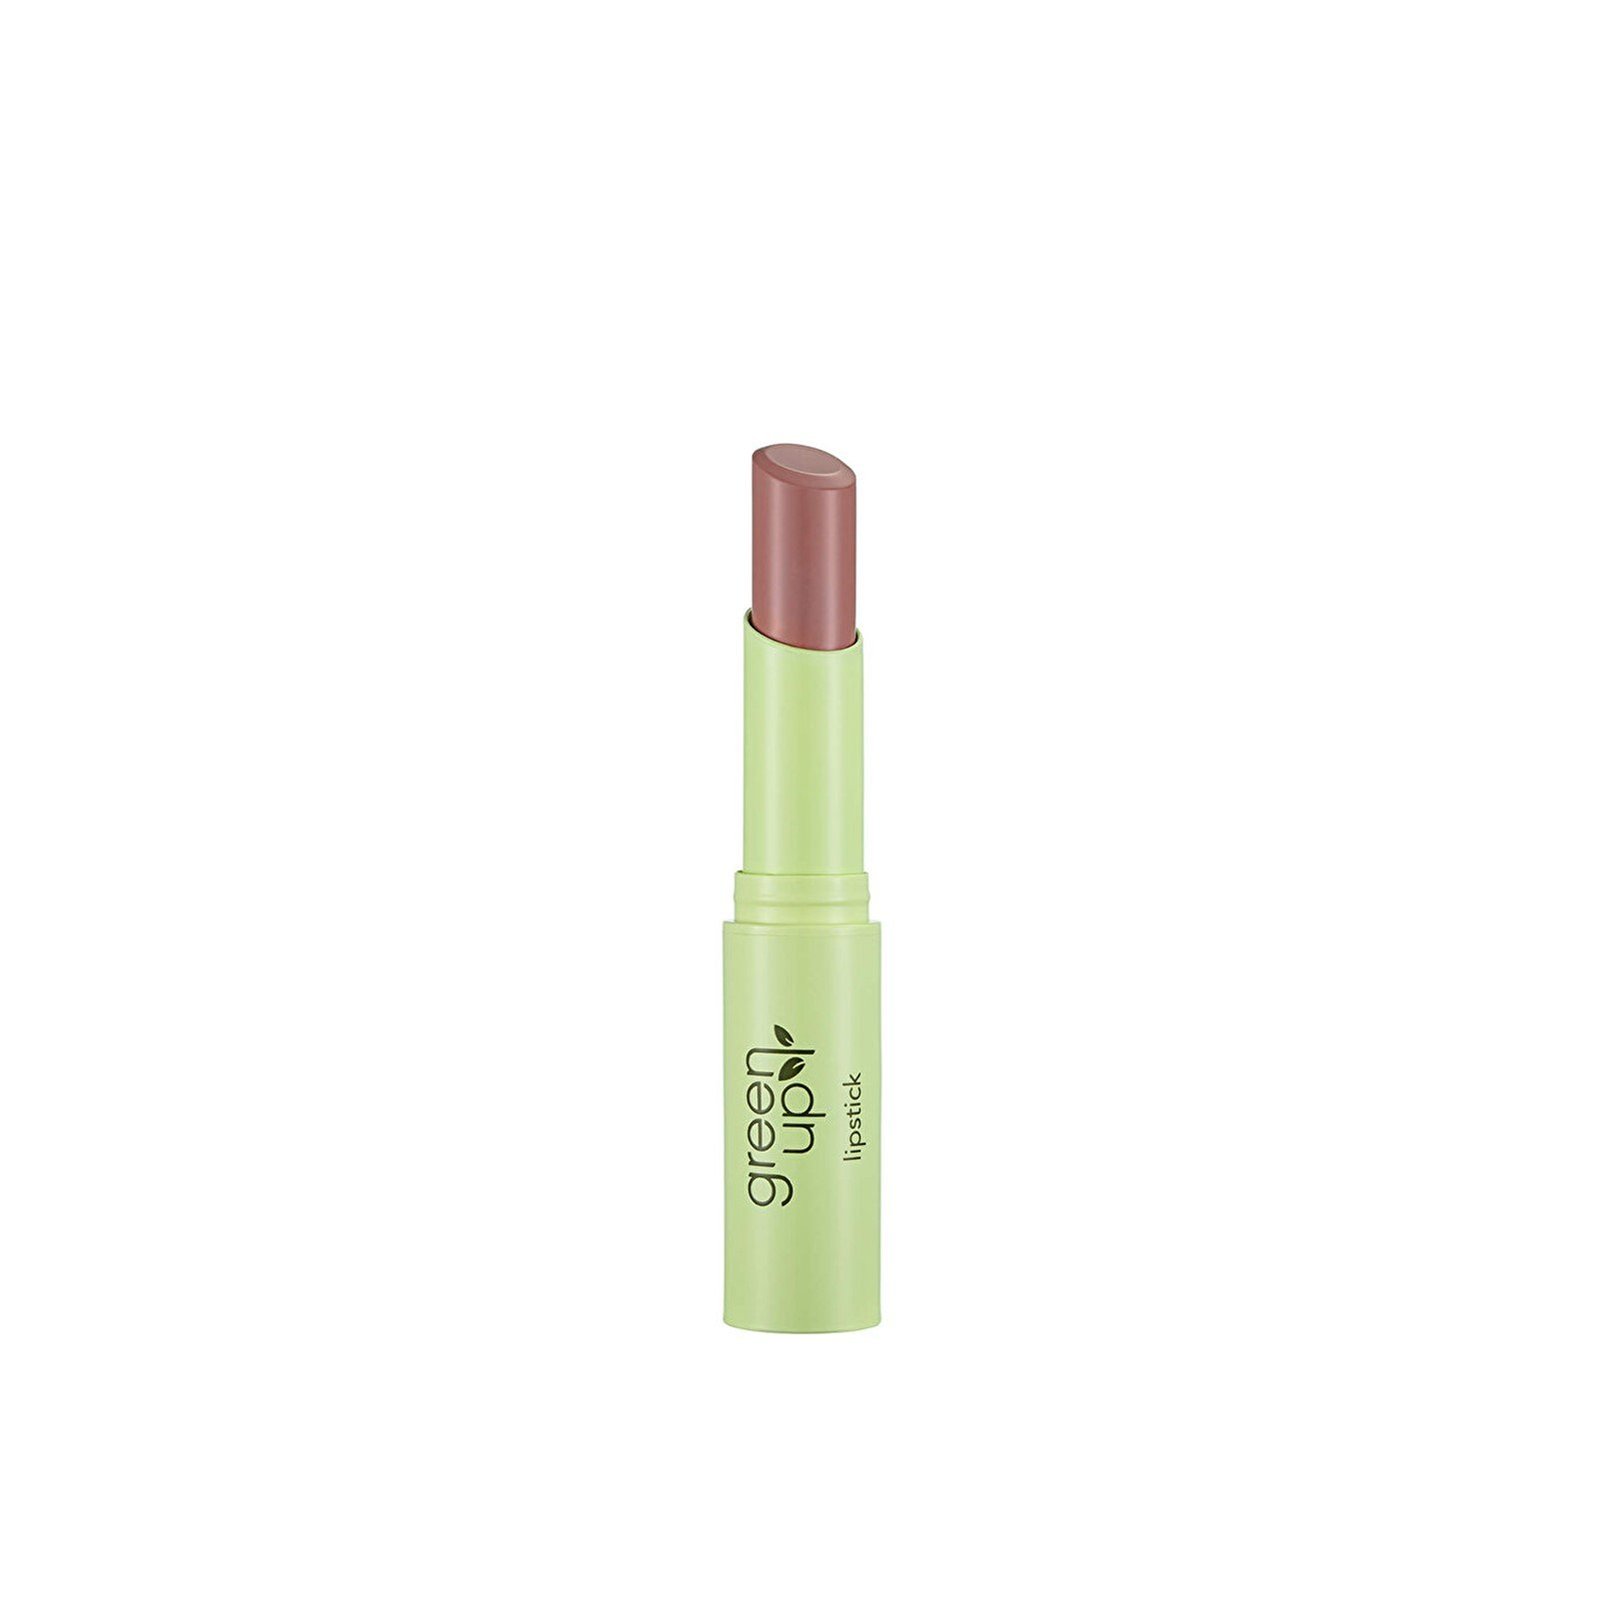 Flormar Green Up Lipstick 001 Nude Beauty 3g (0.11 oz)